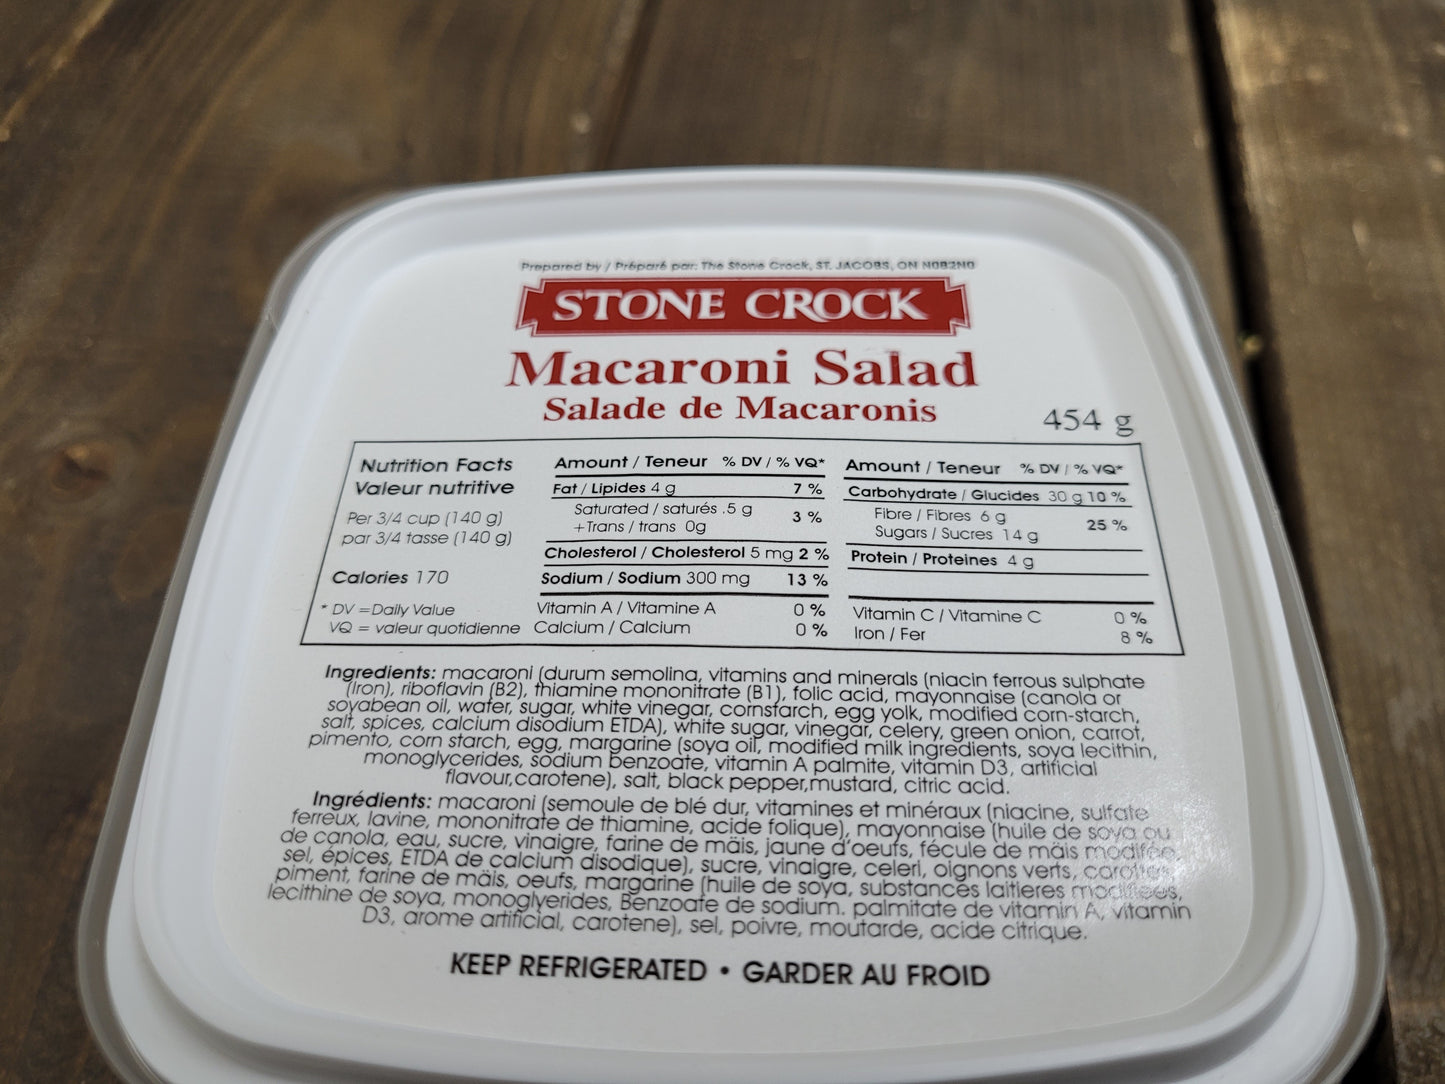 Macaroni Salad - 454g